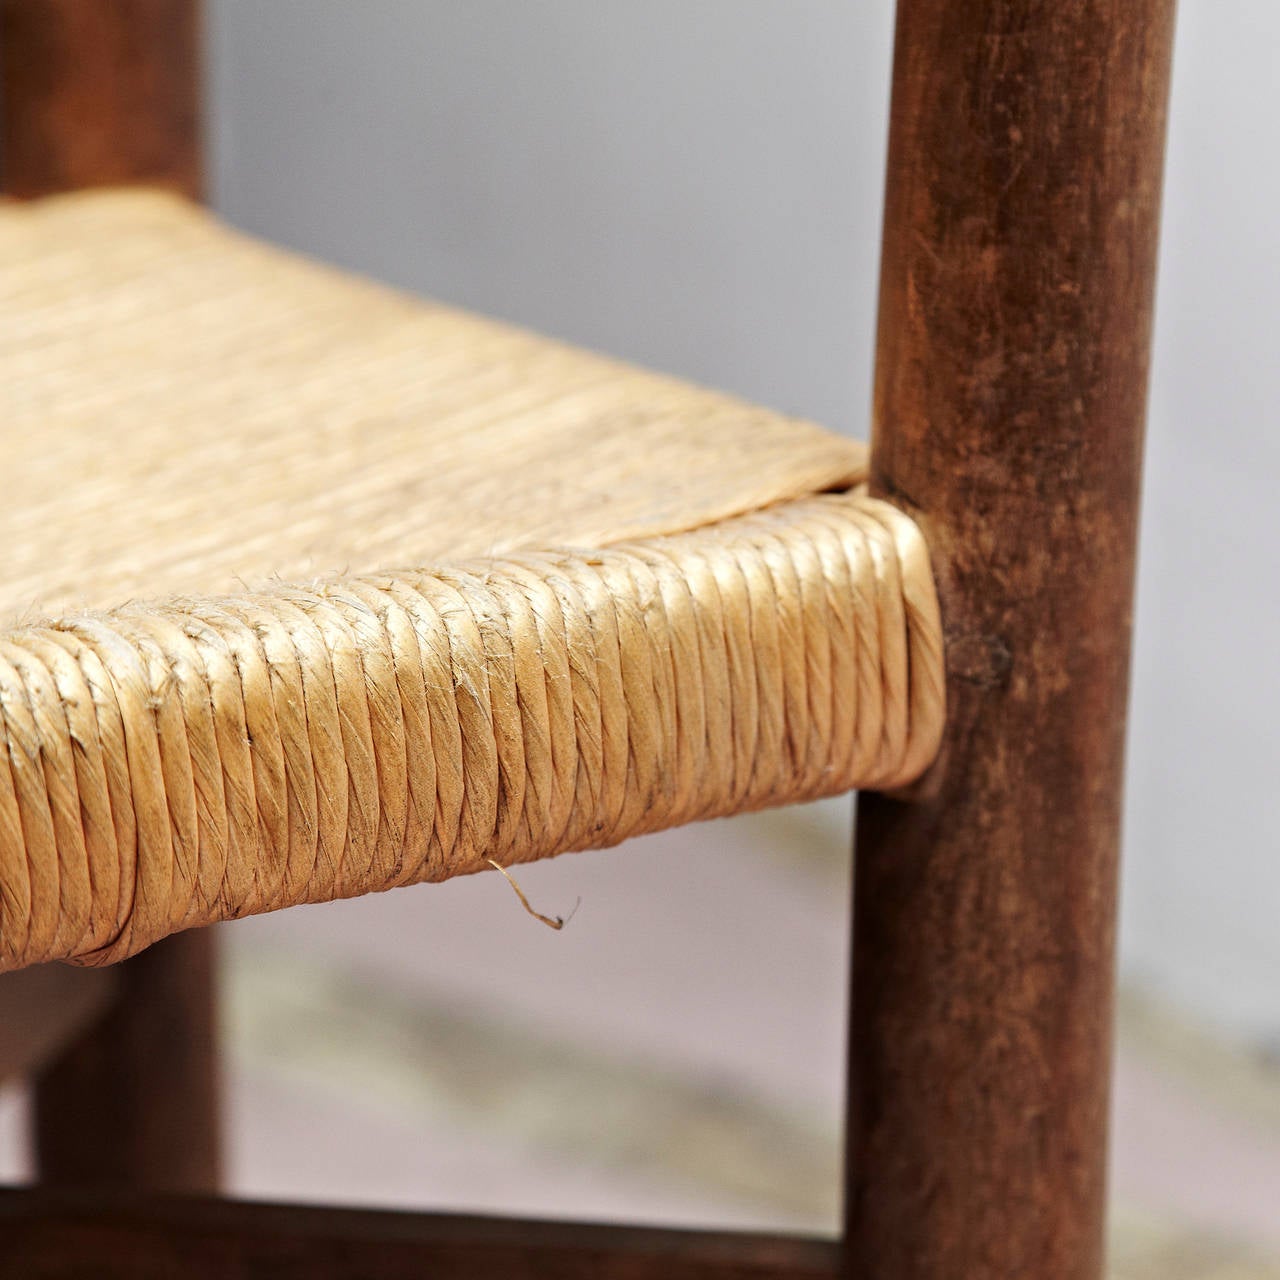 Rush Charlotte Perriand Mid-Century Modern Wood Meribel French Chair, circa 1950